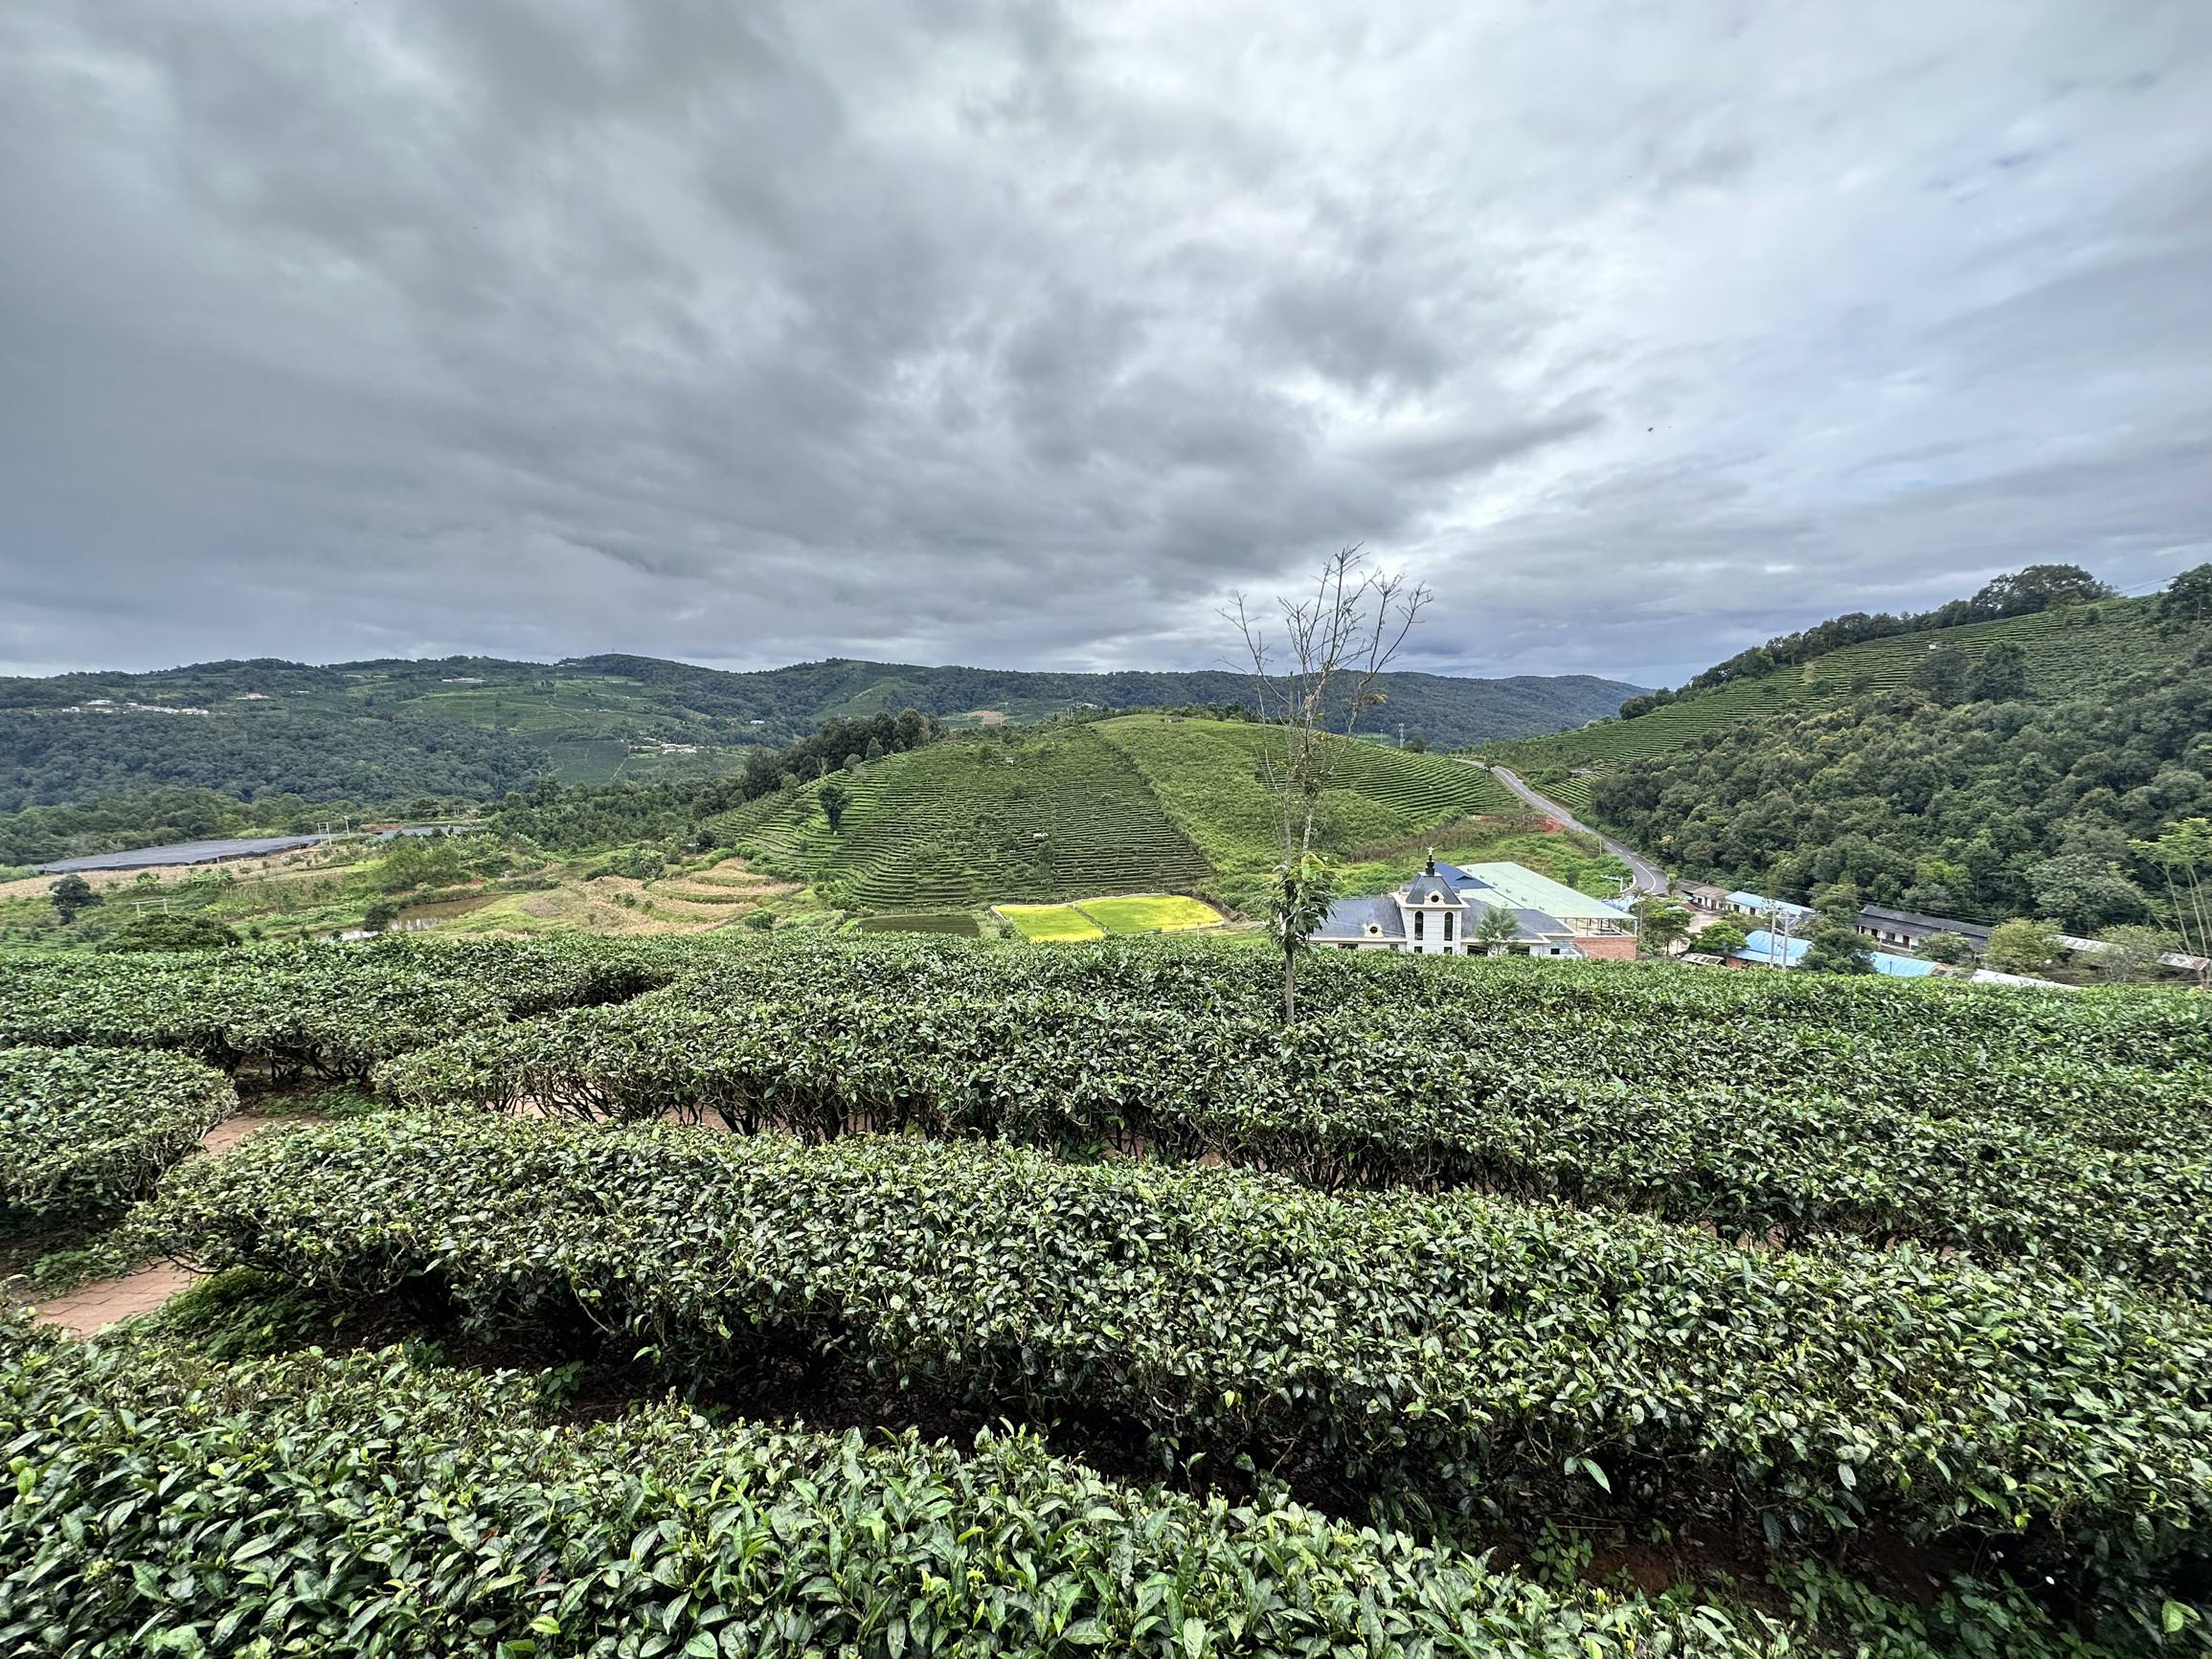 茶山漫游记——一趟寻找茶香的旅程  茶香弥漫的清晨，我踏入了那片静谧而充满生机的茶山。茶山的美，不仅